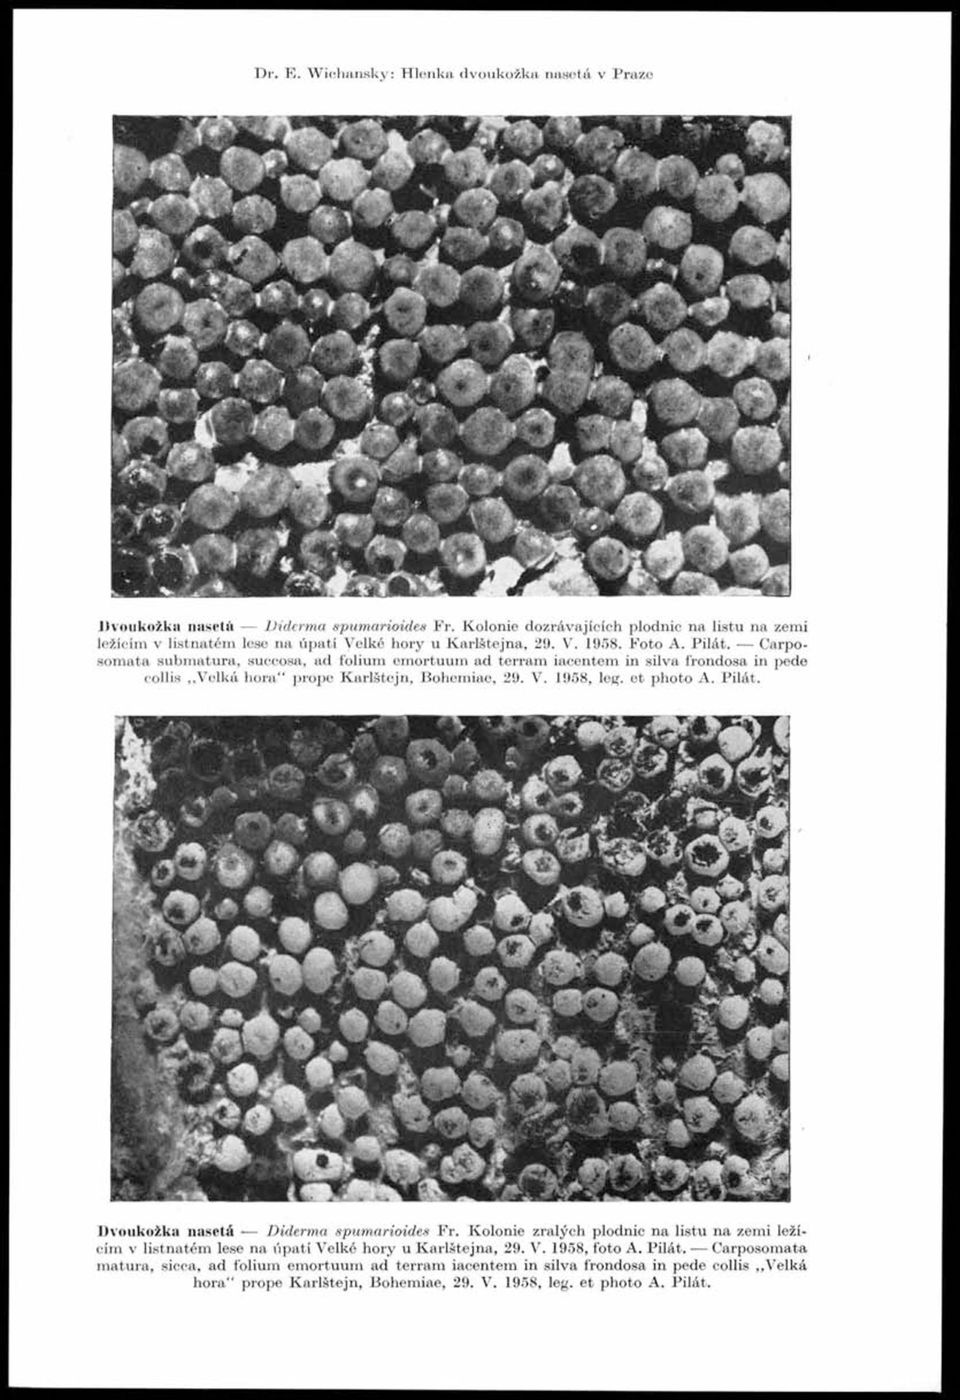 K olonie dozrávajících plodnic na listu na zemi ležícím v listnatém lese na úpatí Velké hory u K arlštejn a, 29. V. 1958. Foto A. P ilát.